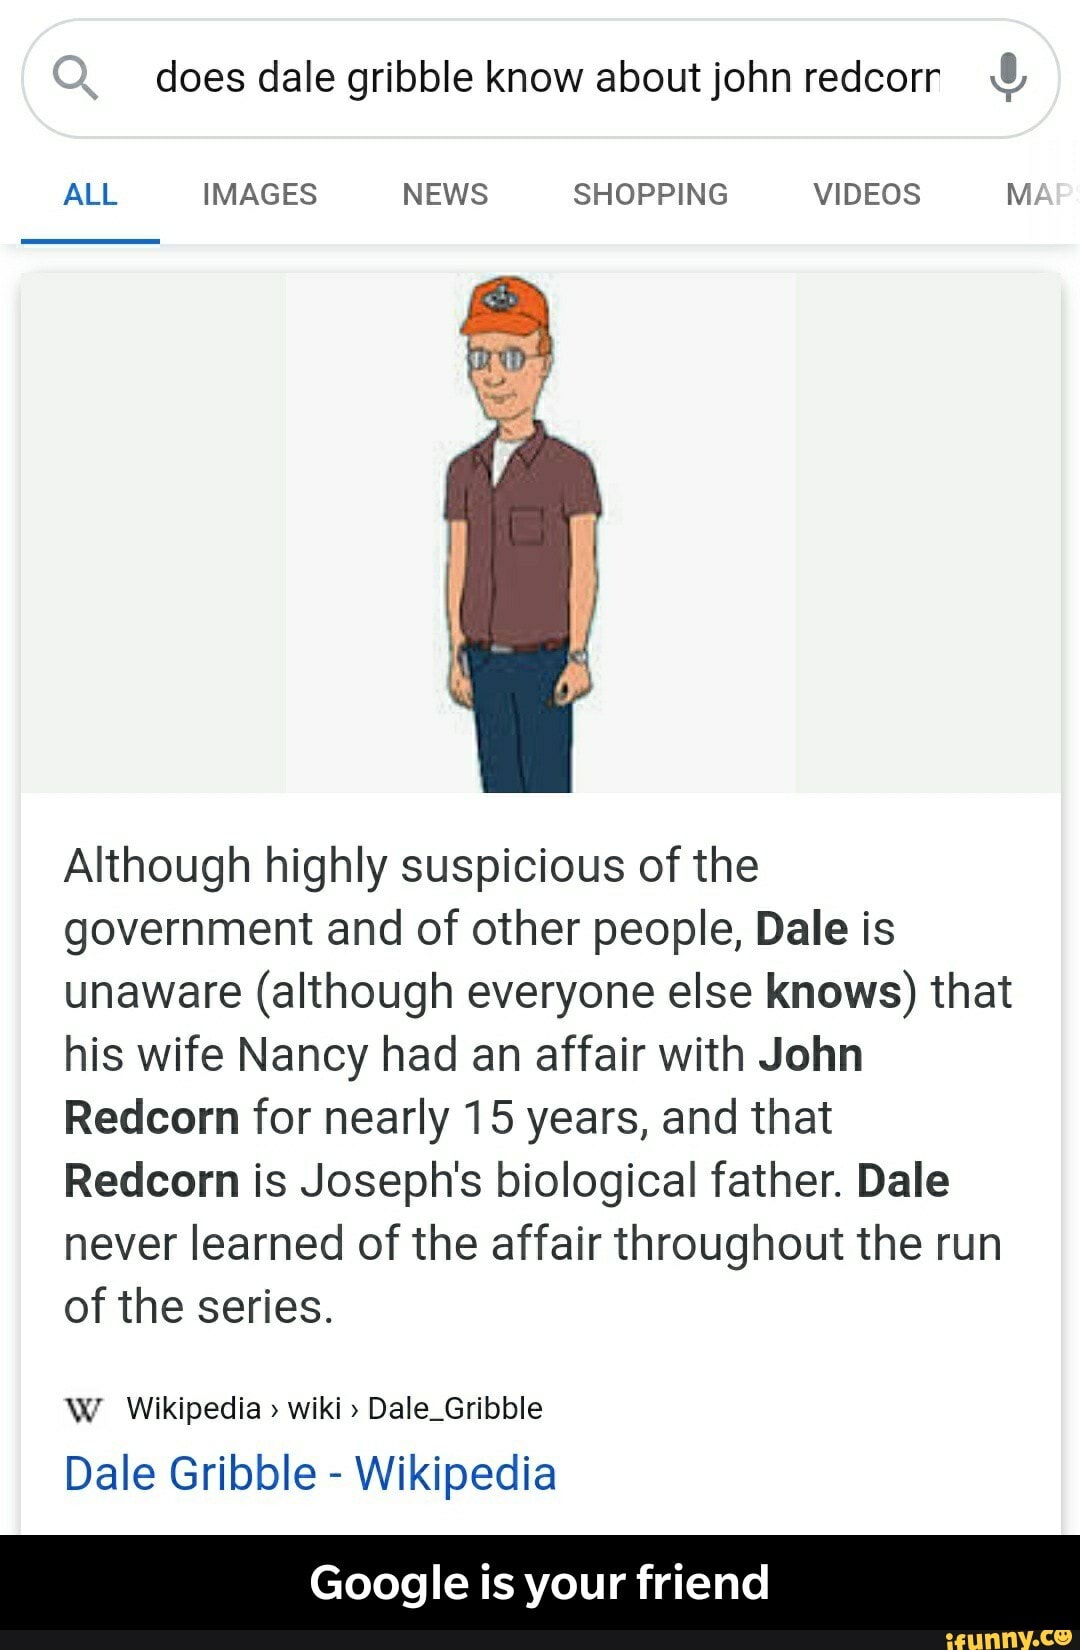 Dale Gribble - Wikipedia